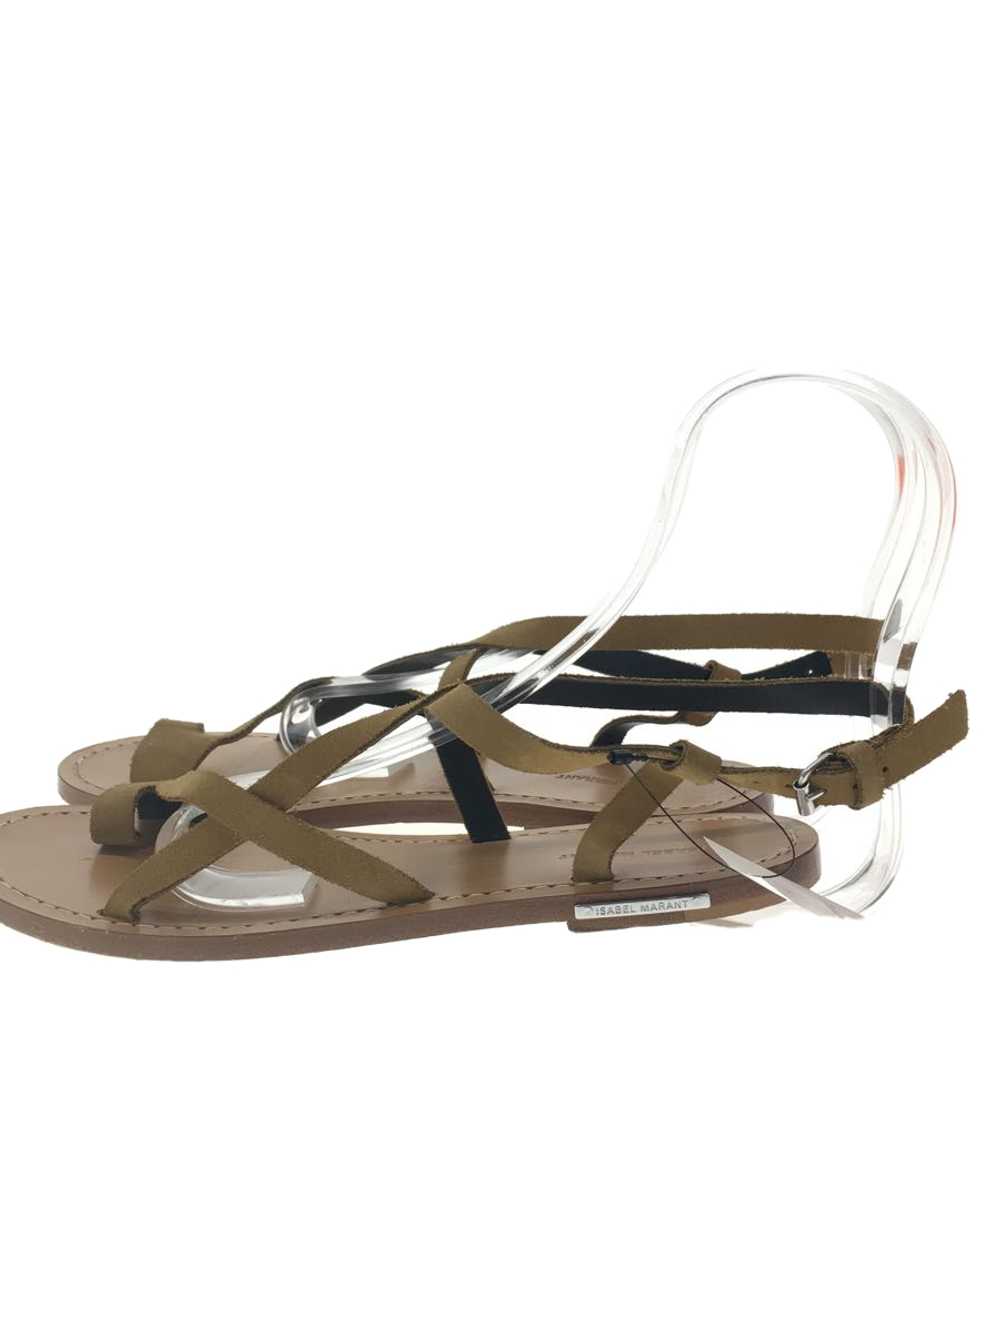 Isabel Marant Sandals/37/Camel/Suede Shoes BLr22 - image 1